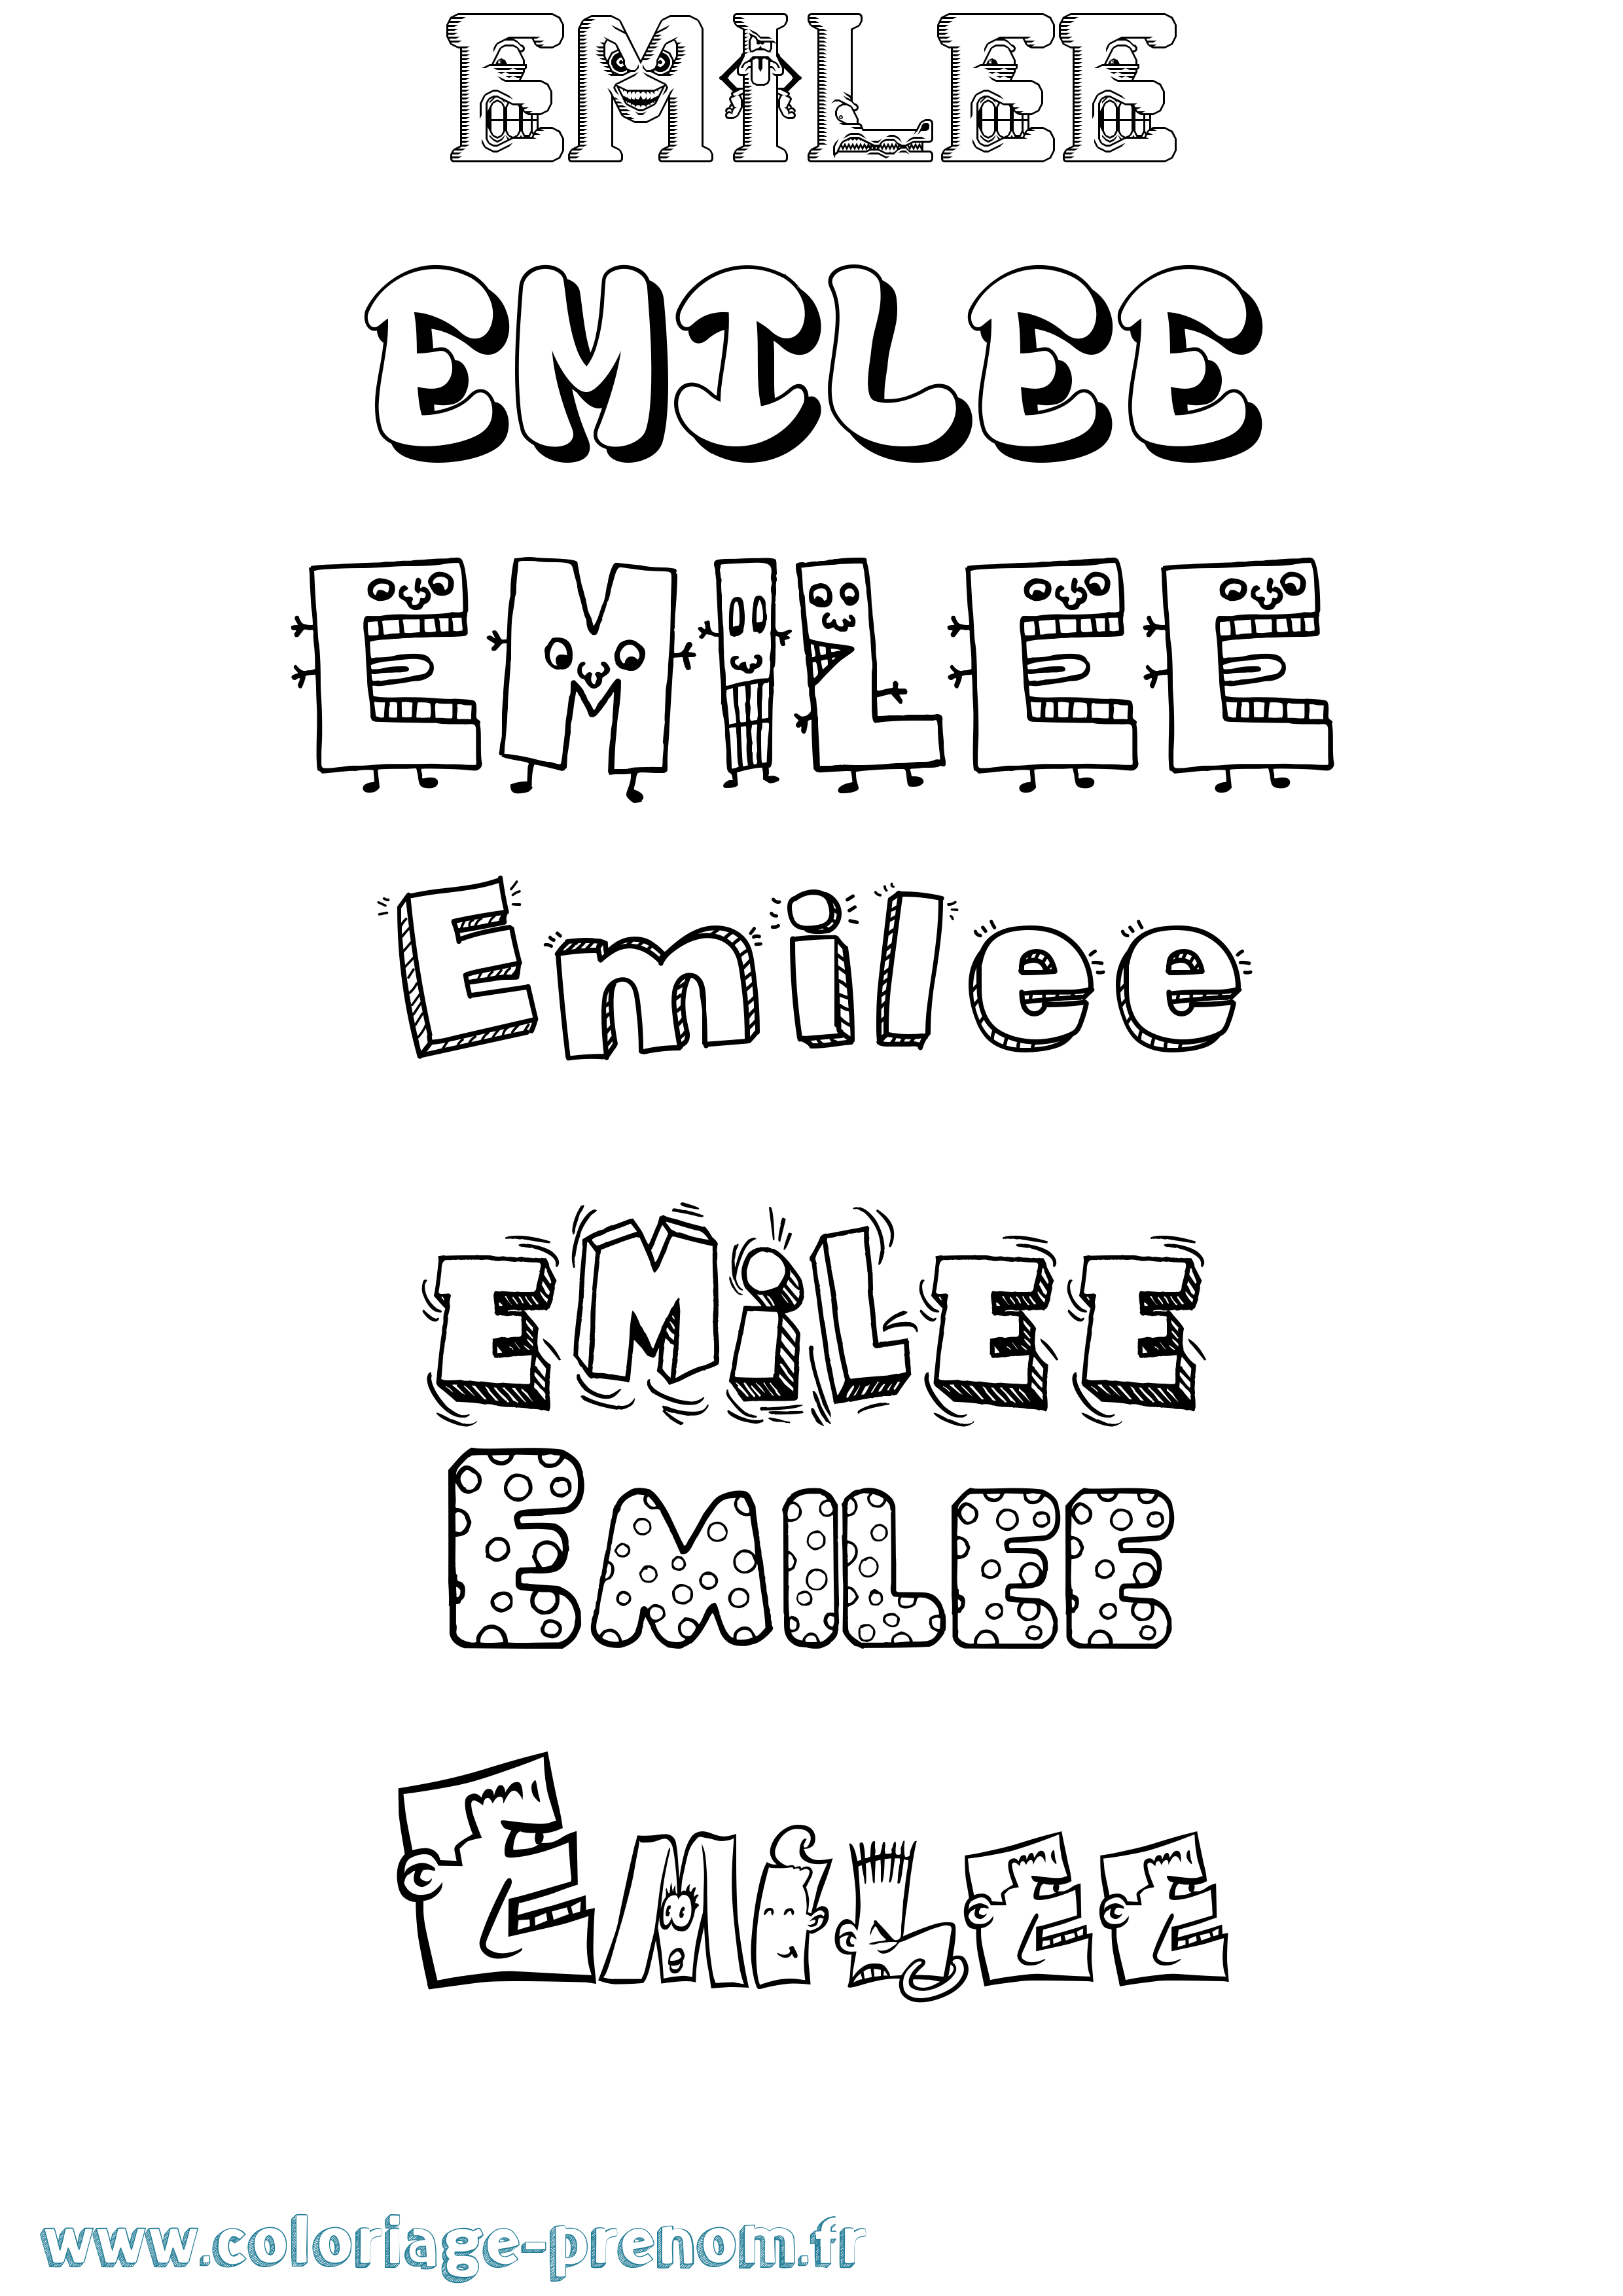 Coloriage prénom Emilee Fun